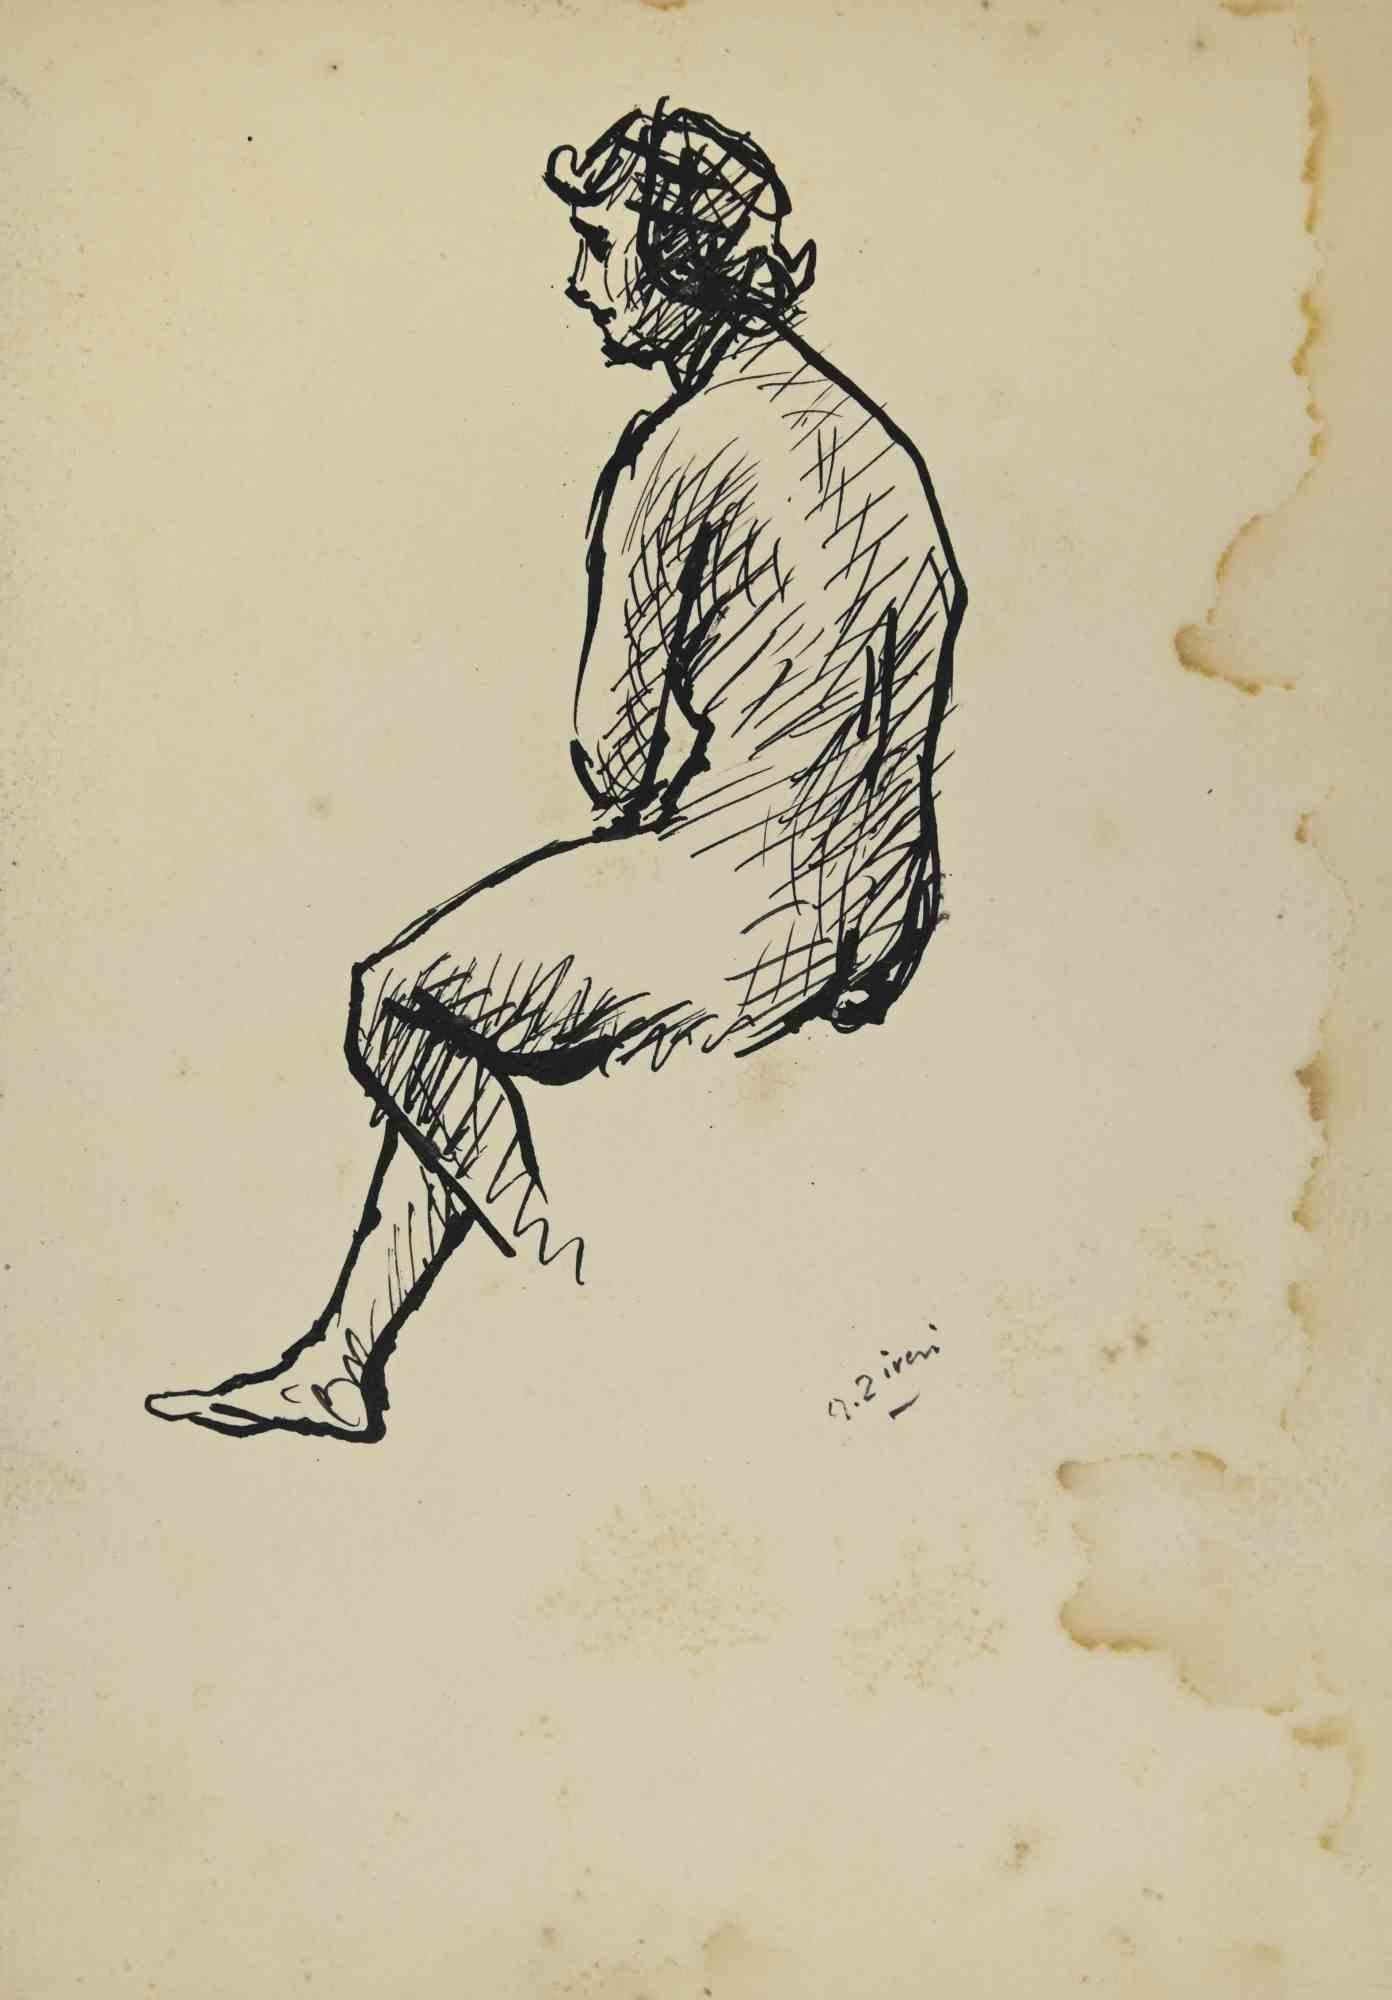 Der Akt ist eine Zeichnung von Alberto Ziveri aus den 1930er Jahren.

Tinte auf Papier.

Handsigniert.

In gutem Zustand mit Stockflecken und Flecken am rechten Rand.

Das Kunstwerk wird durch geschickte Striche meisterhaft dargestellt.

Alberto